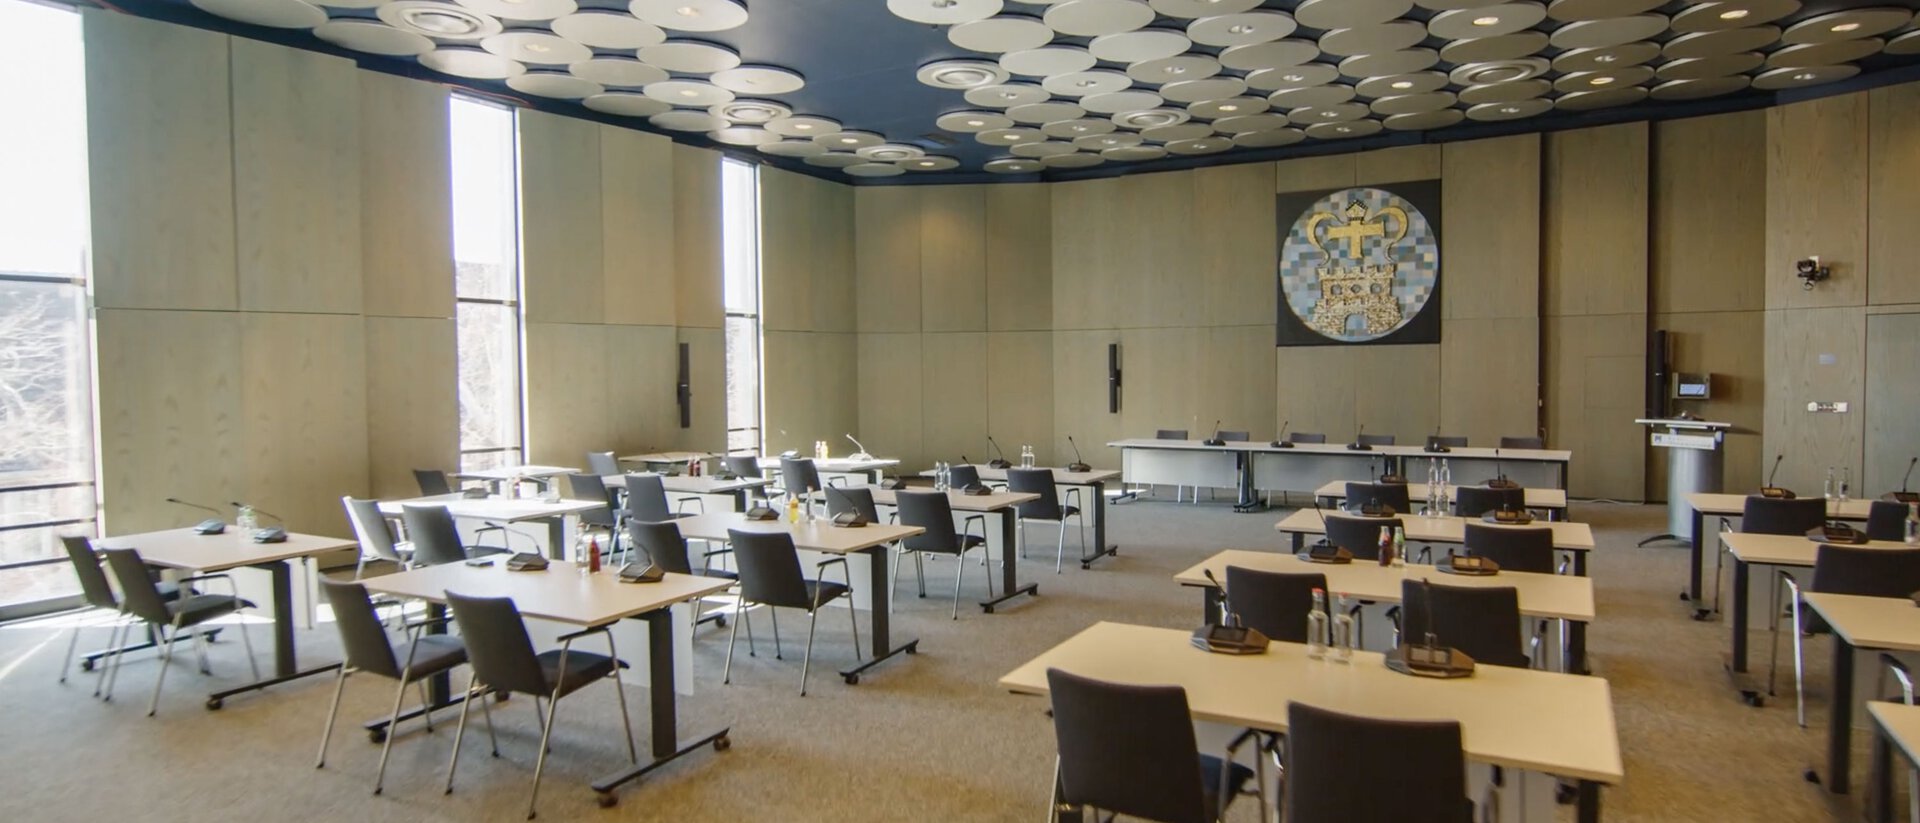 Ein Bild eines leeren Sitzungssaales mit mehreren Sprechstellen und einem großen Podium an der Stirnseite